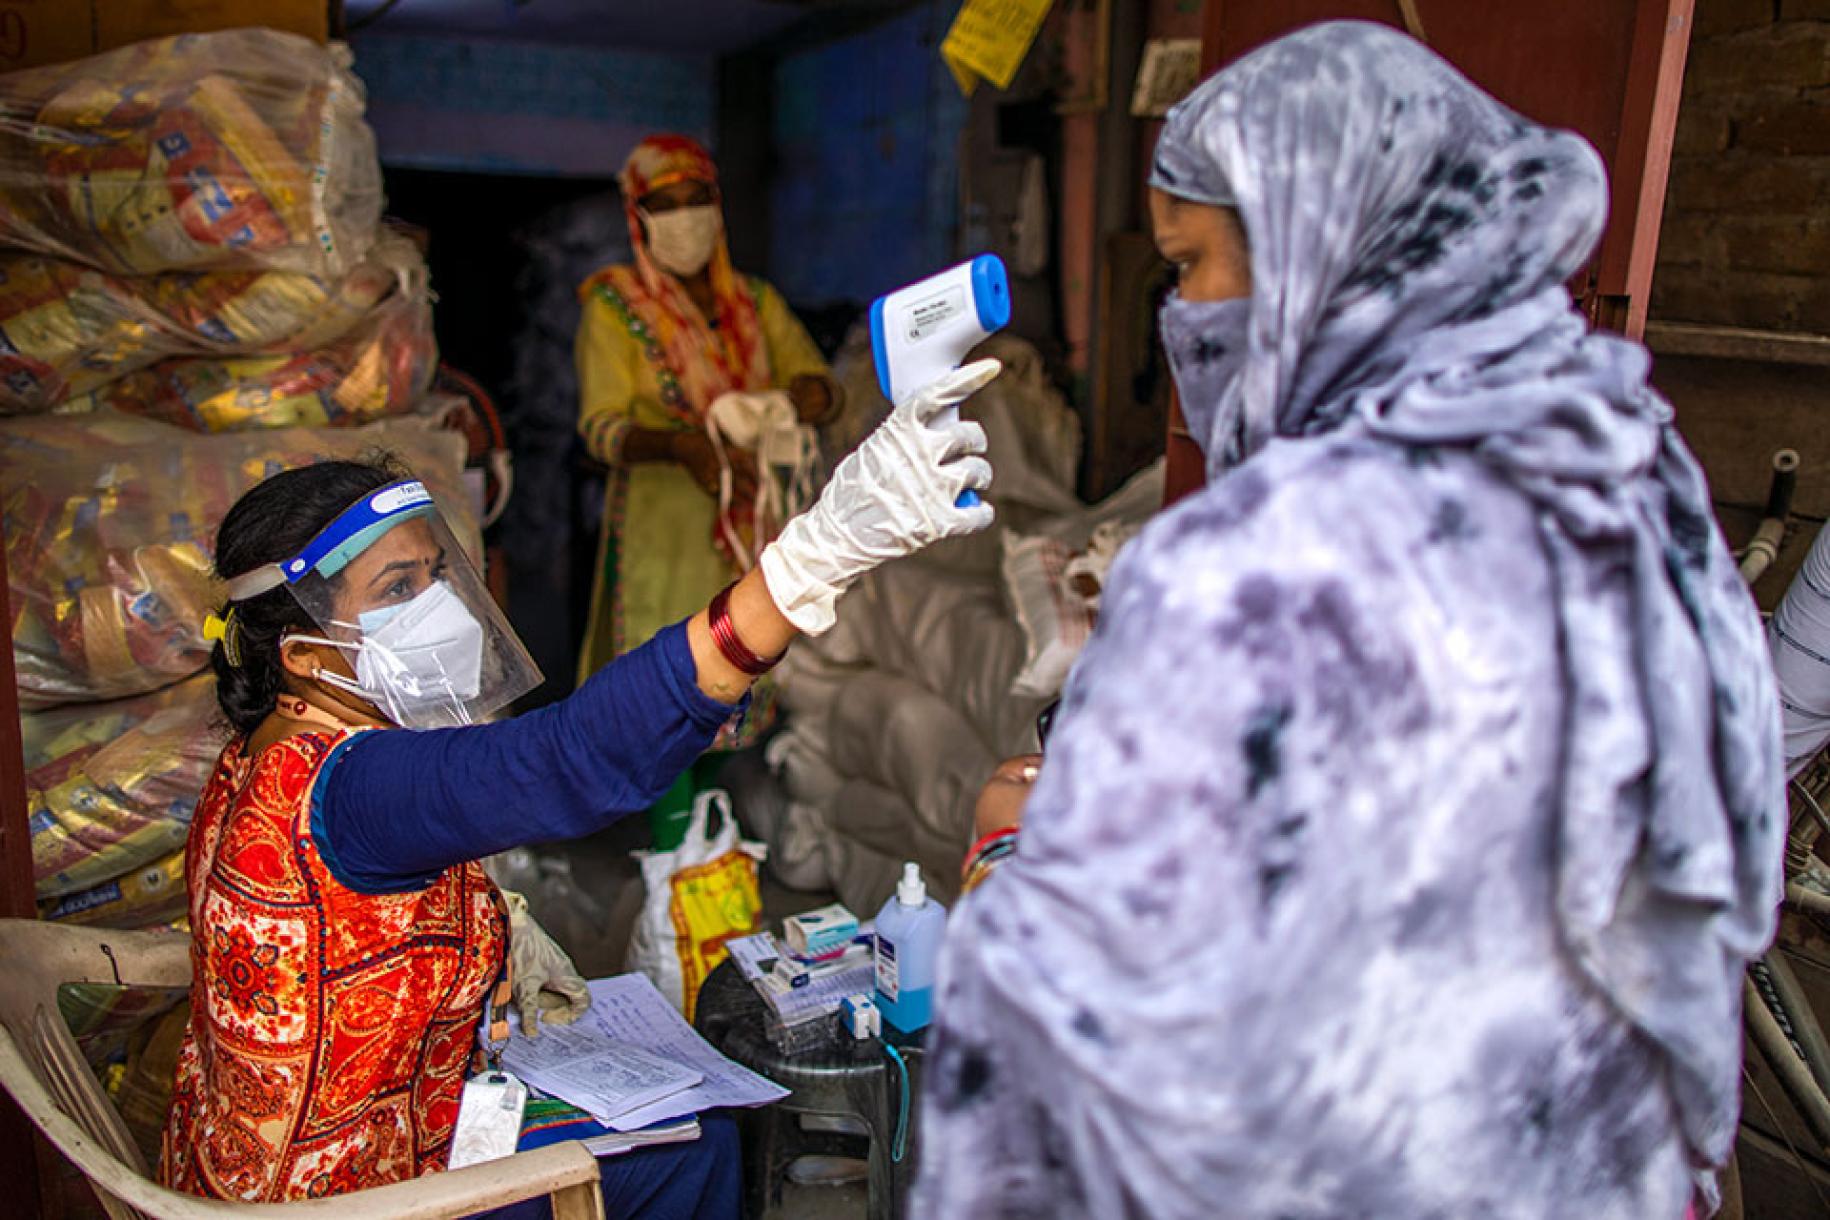 A New Delhi, en Inde, une travailleuse communautaire de l’association SEWA portant un masque de protection respiratoire contrôle la température corporelle d’une femme entièrement voilée à l’aide d’un thermomètre sans contact.